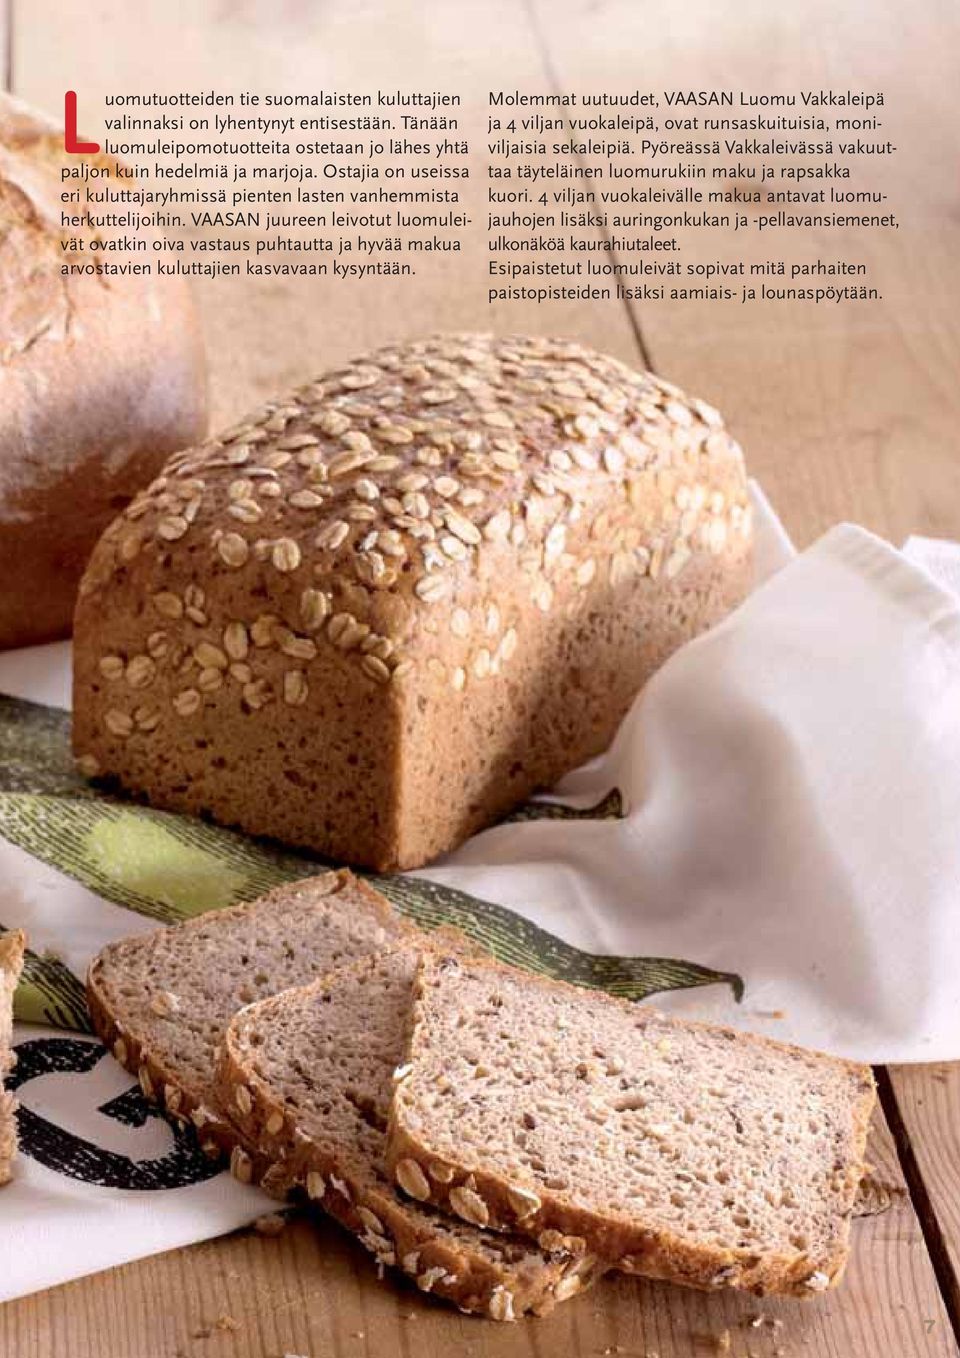 VAASAN juureen leivotut luomuleivät ovatkin oiva vastaus puhtautta ja hyvää makua arvostavien kuluttajien kasvavaan kysyntään.